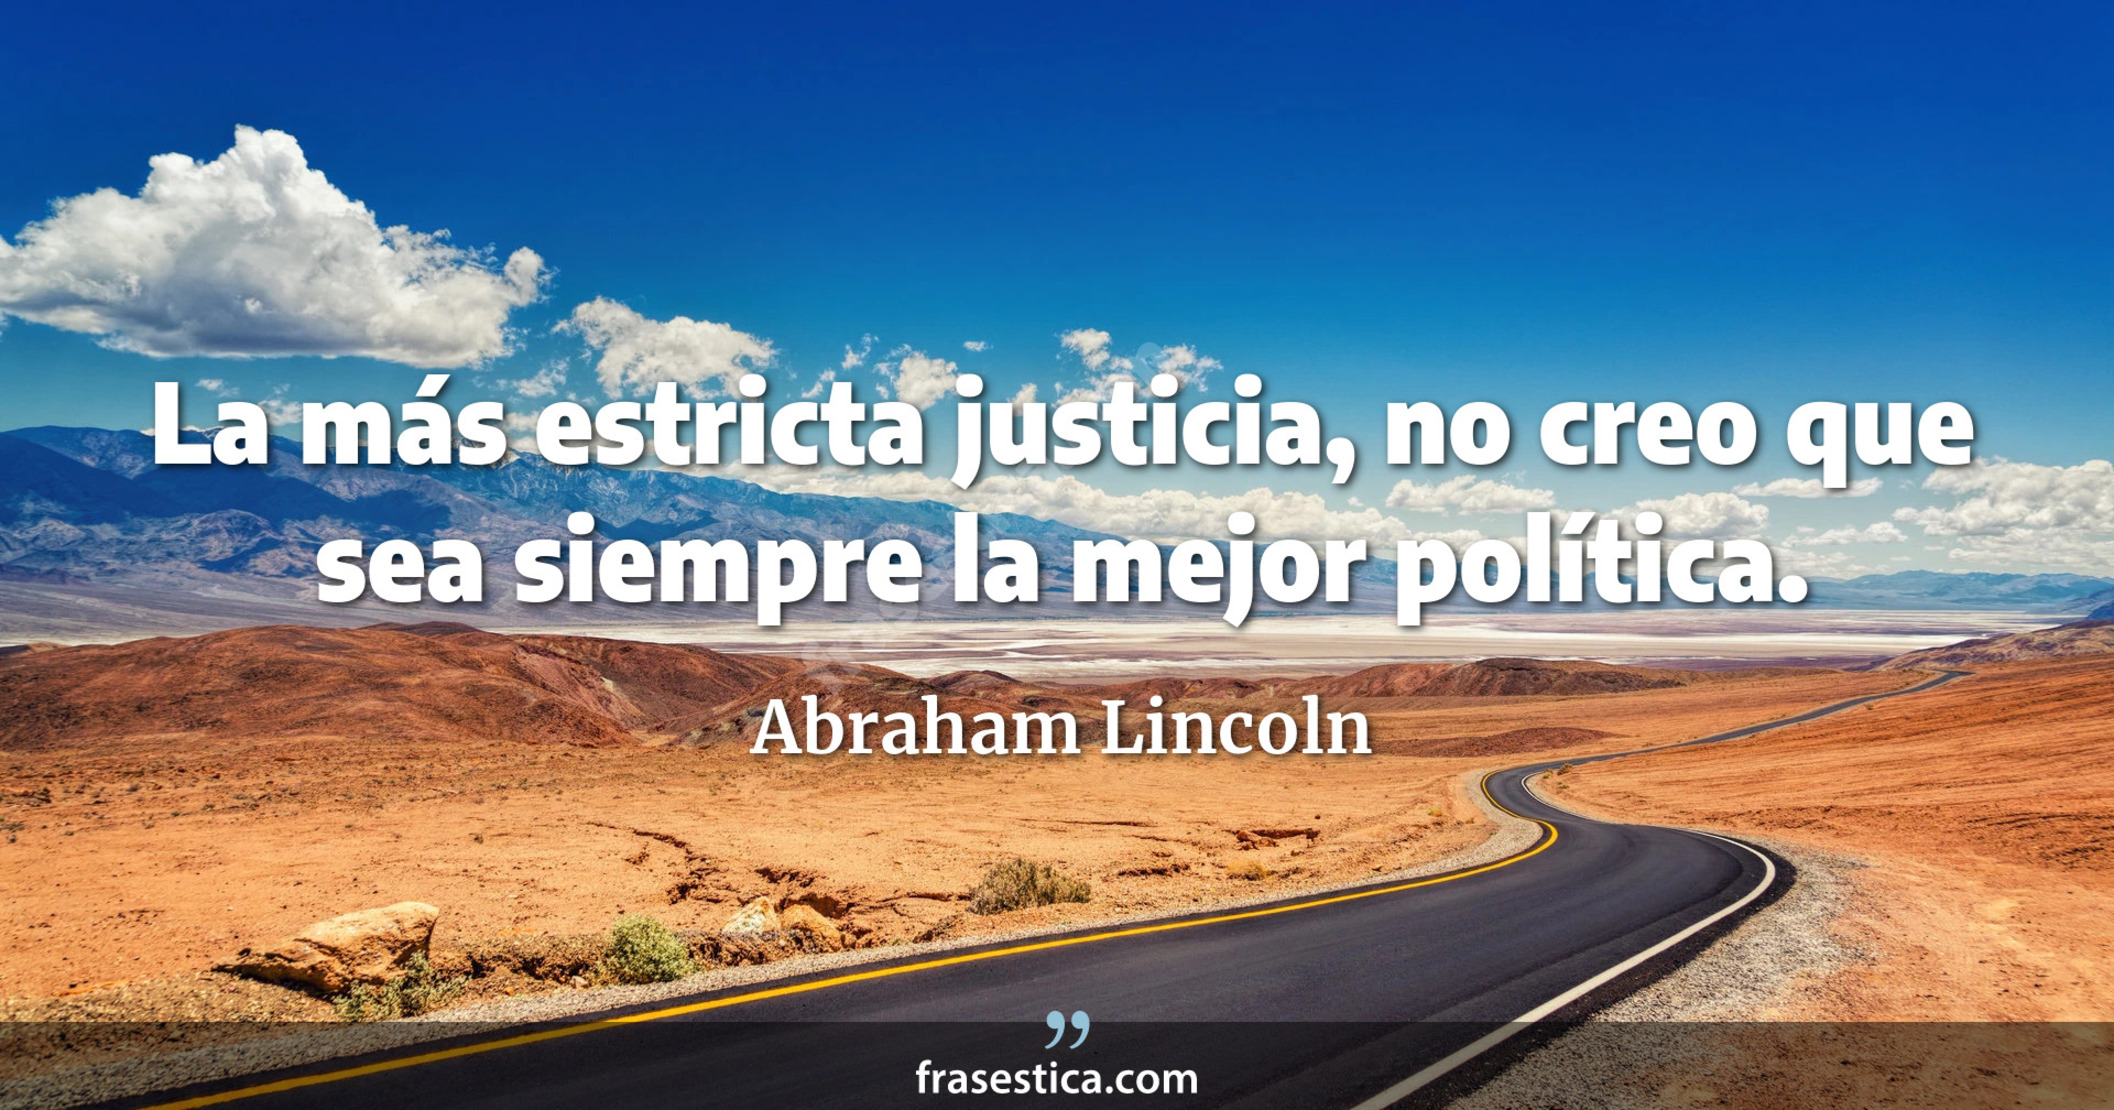 La más estricta justicia, no creo que sea siempre la mejor política. - Abraham Lincoln